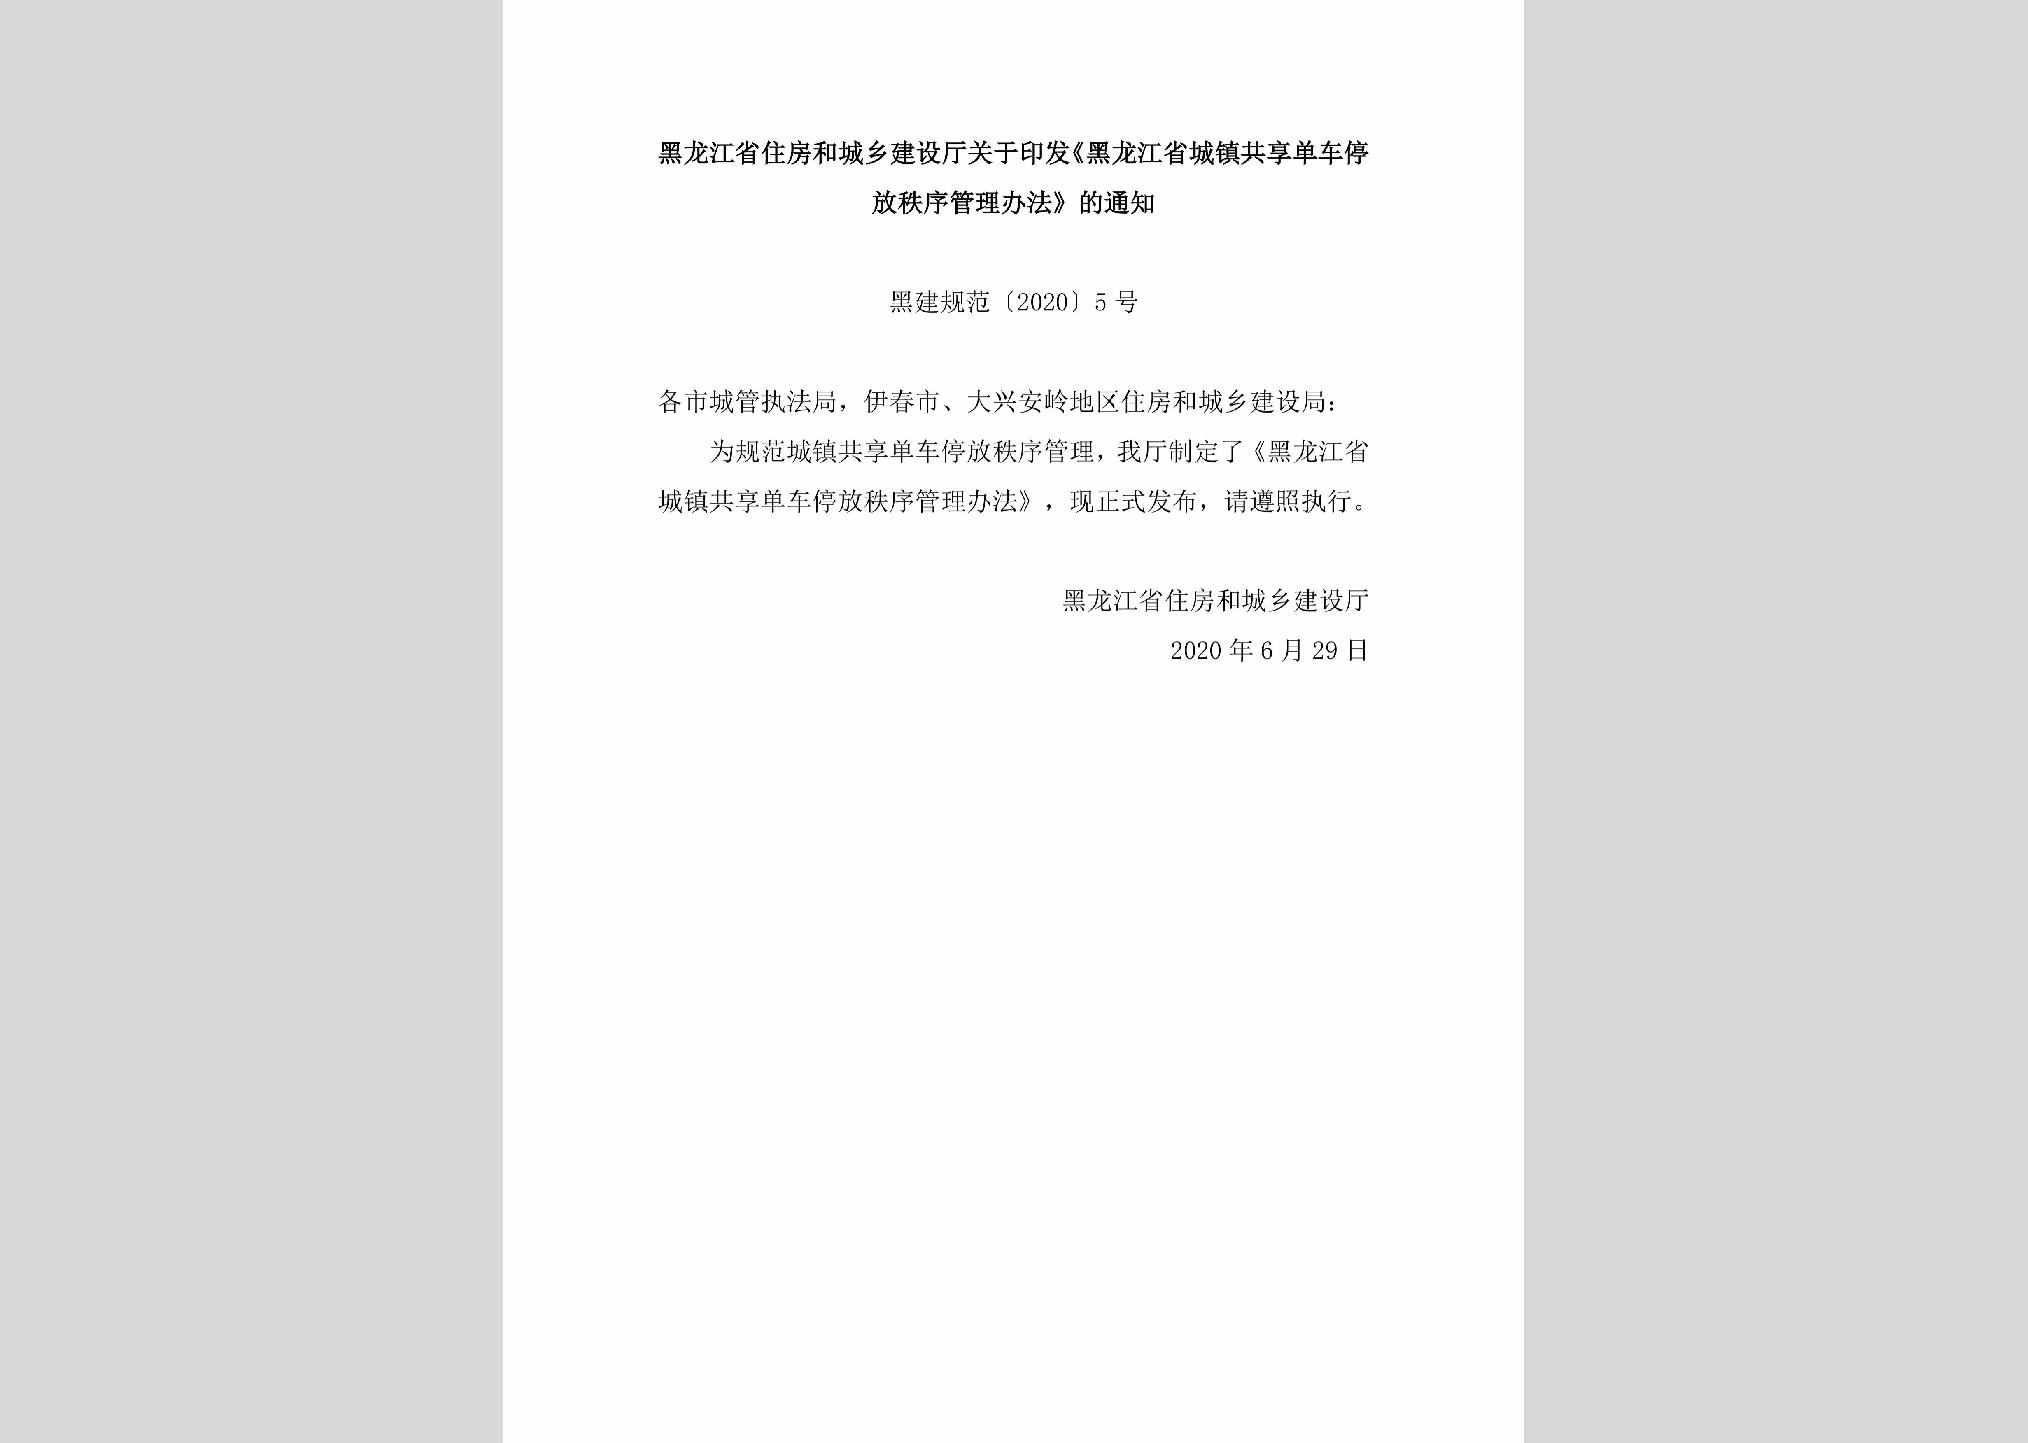 黑建规范[2020]5号：黑龙江省住房和城乡建设厅关于印发《黑龙江省城镇共享单车停放秩序管理办法》的通知